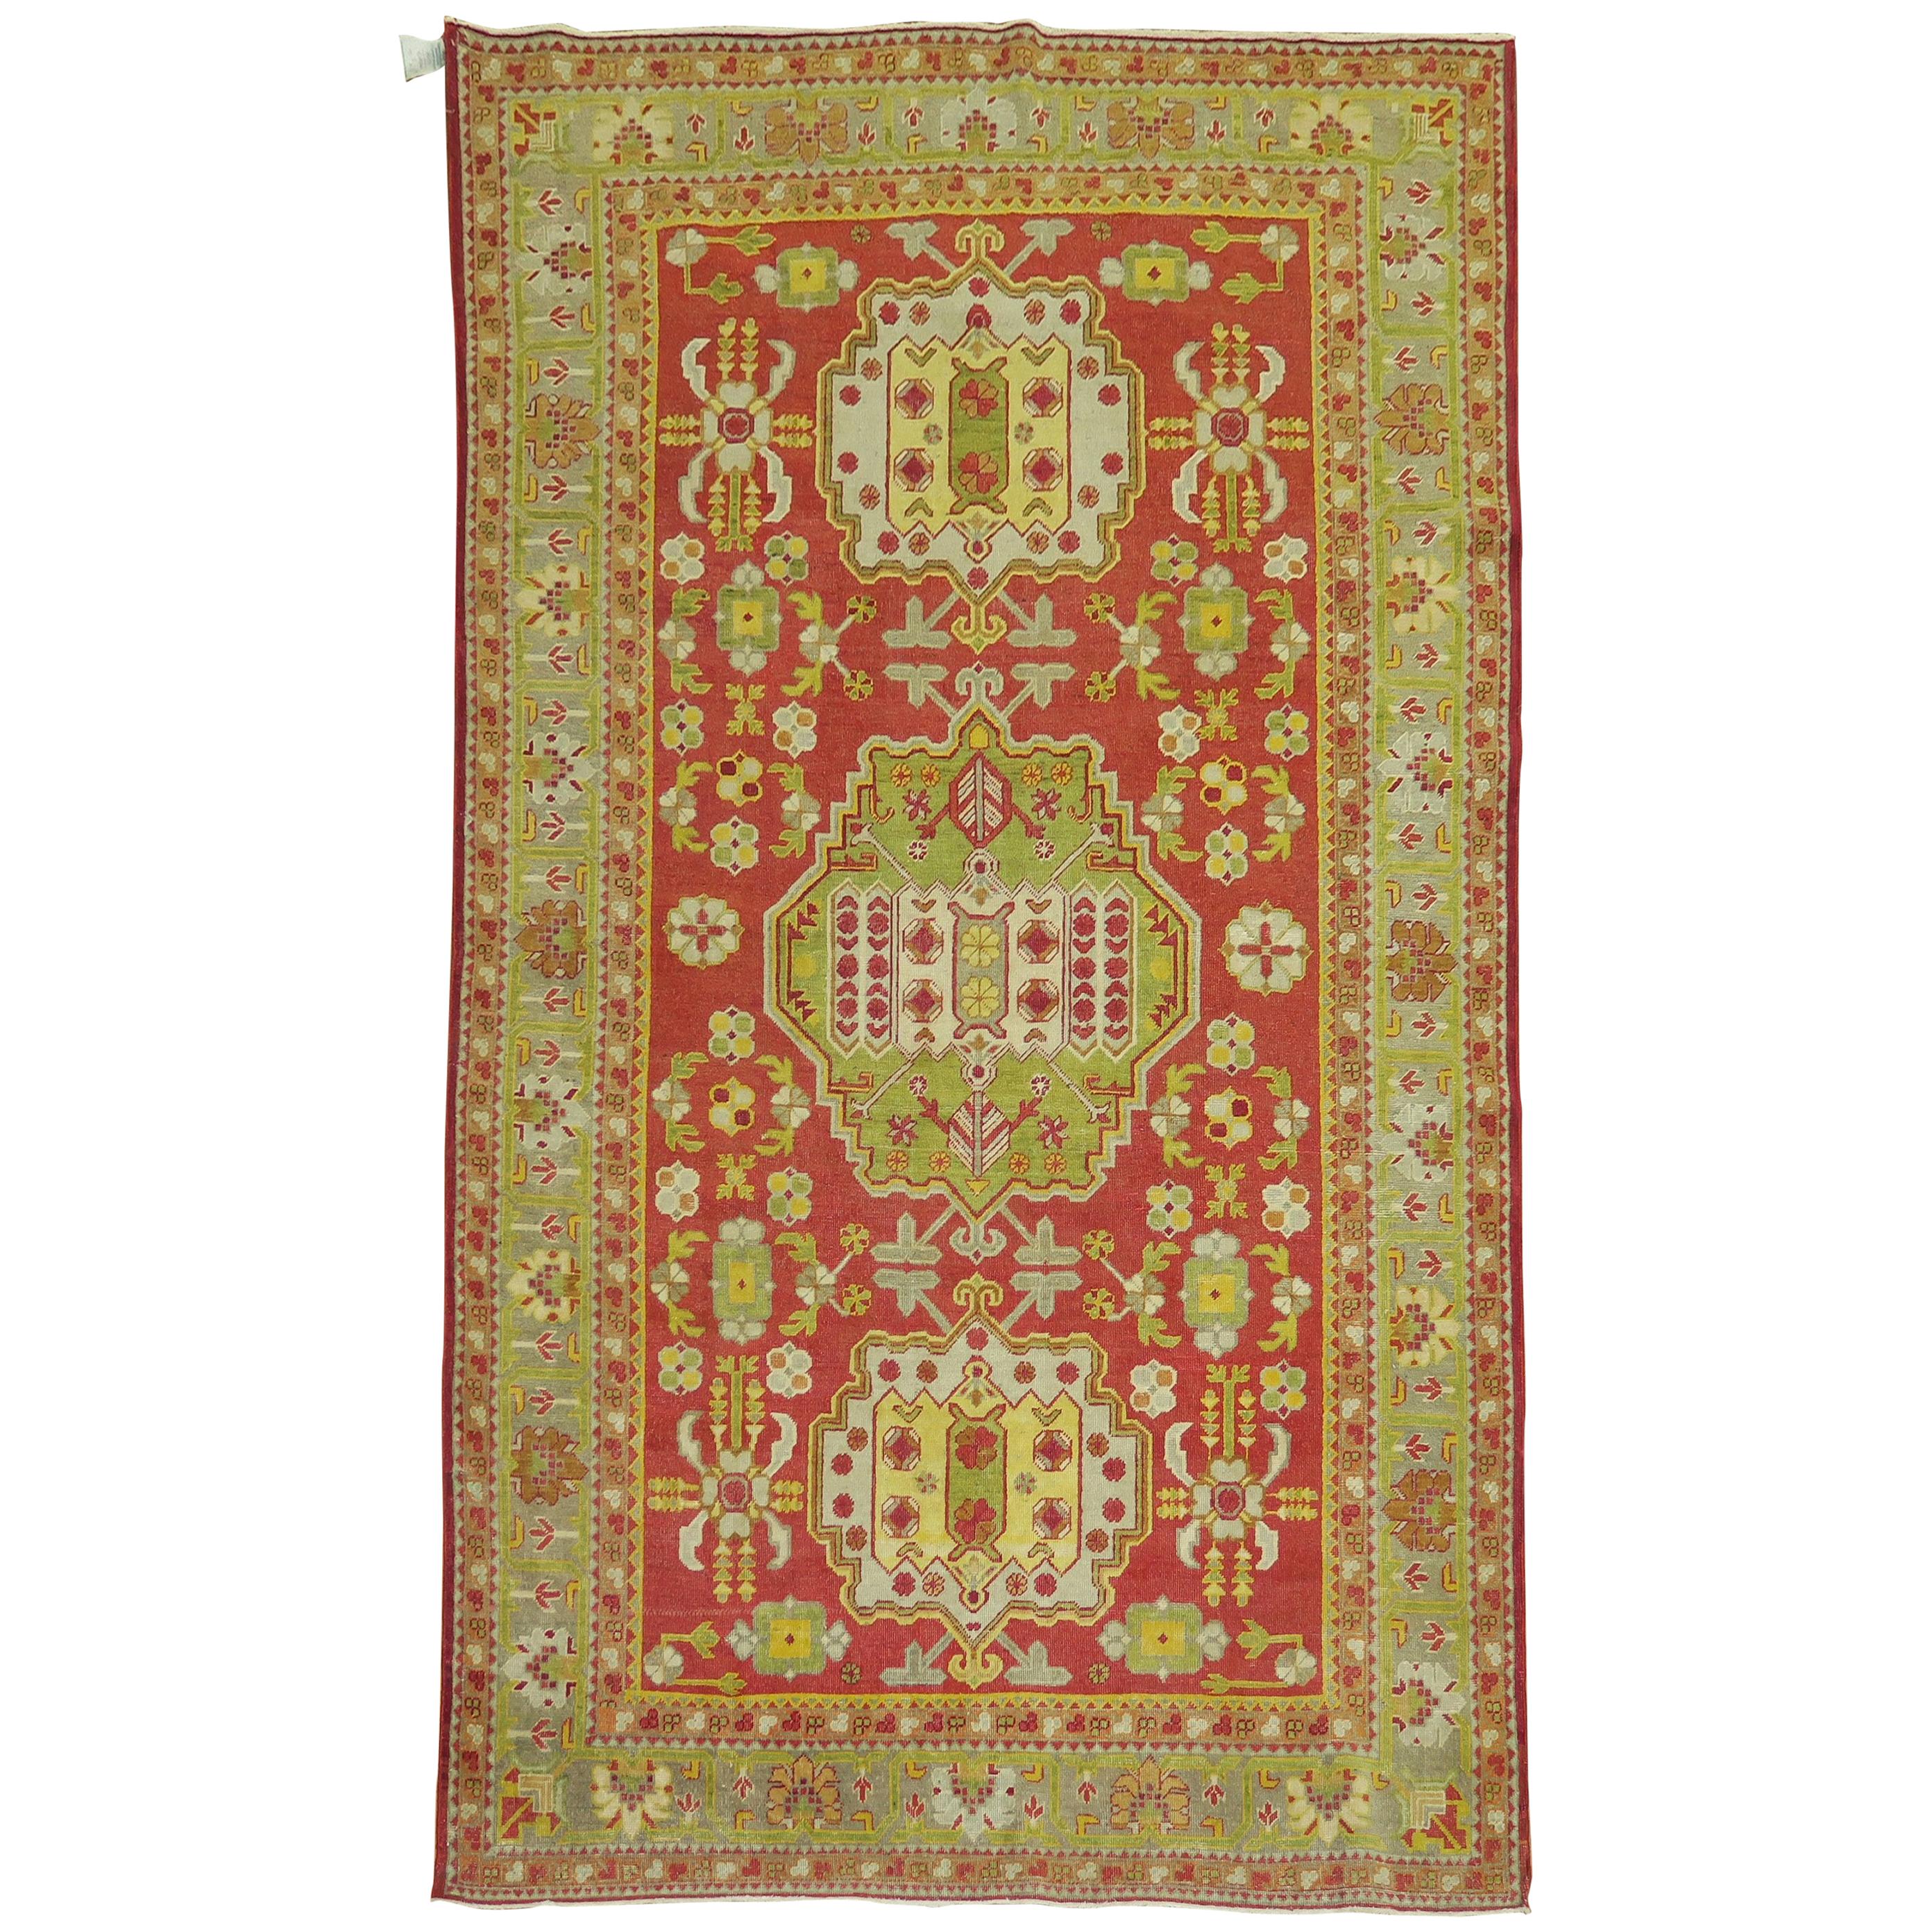 Khotan Antiker handgefertigter Orientteppich aus Wolle, 20. Jahrhundert, leuchtend rot grün gelb